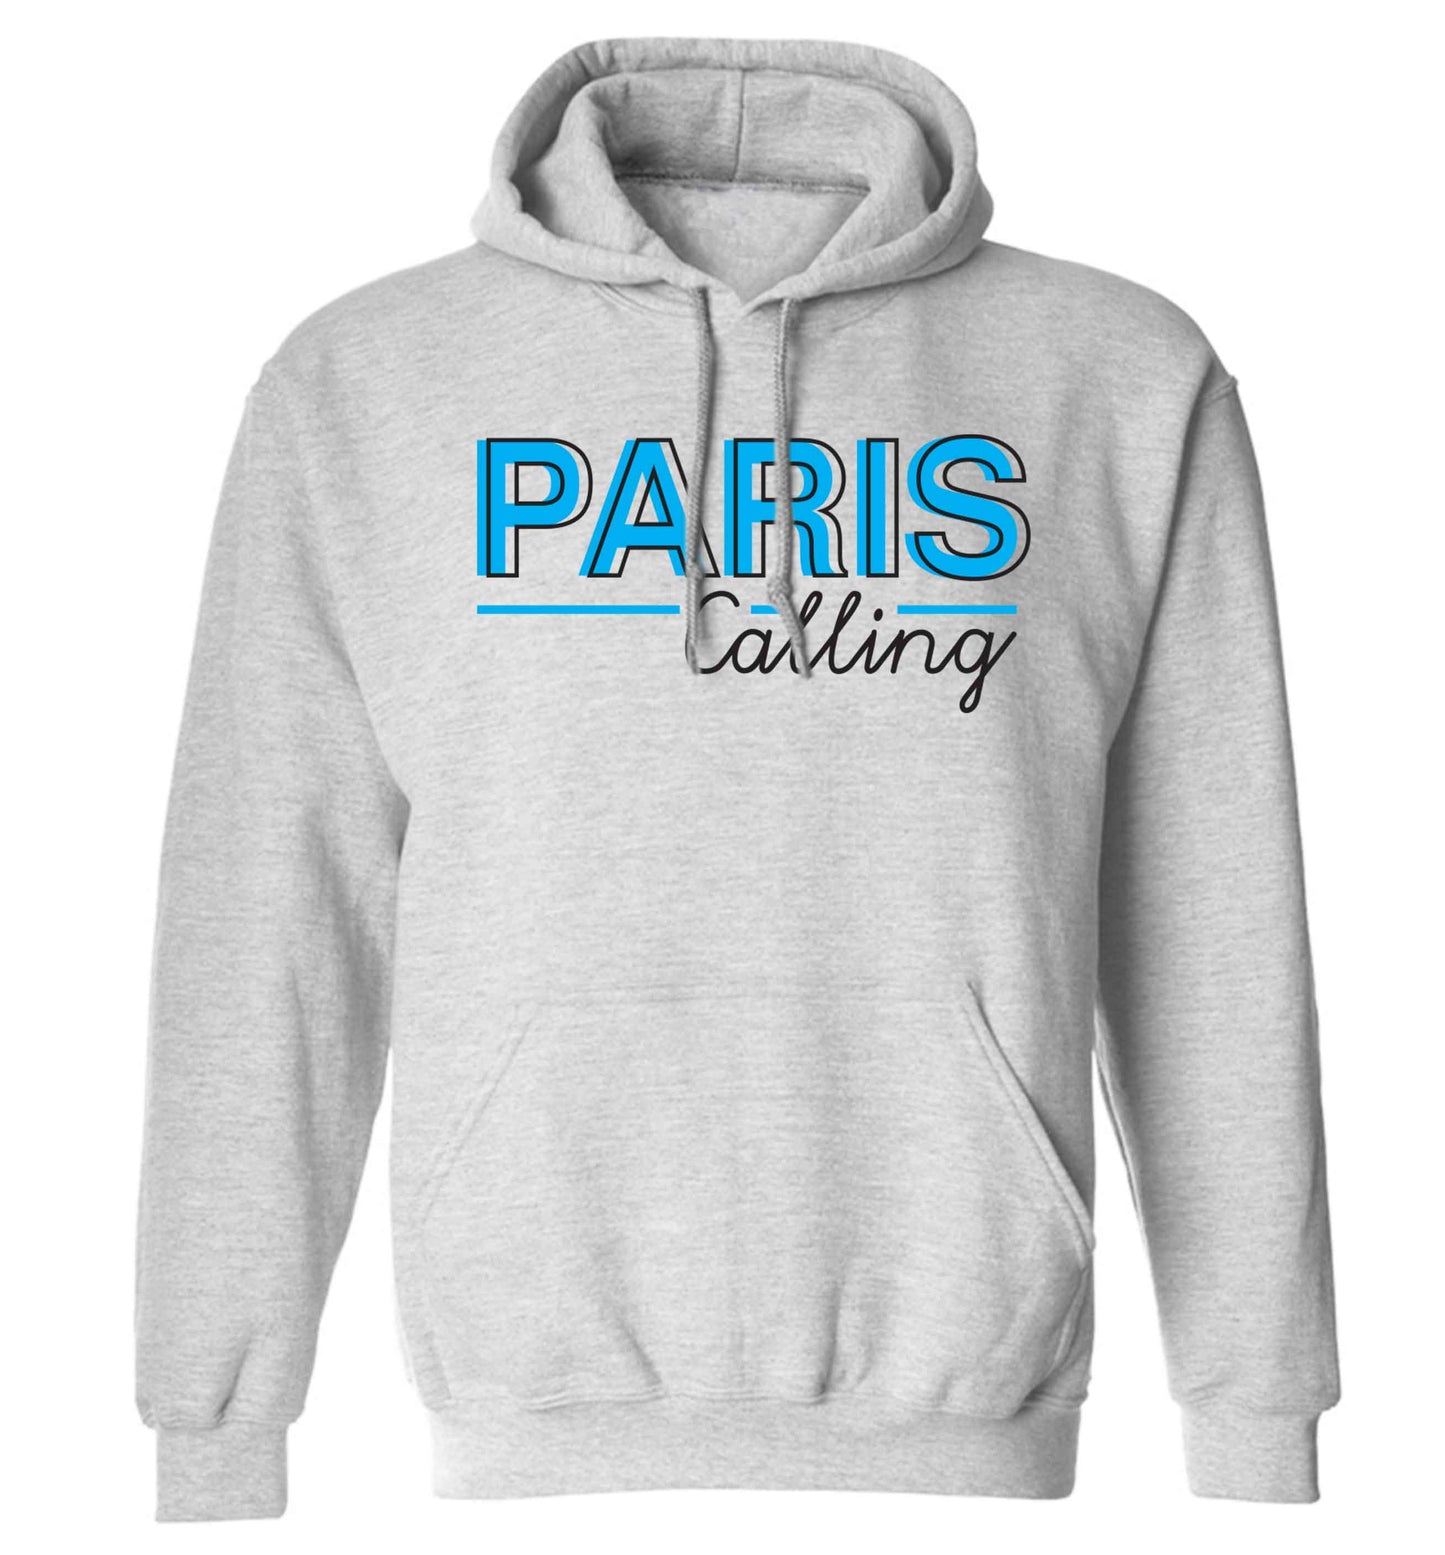 Paris calling adults unisex grey hoodie 2XL